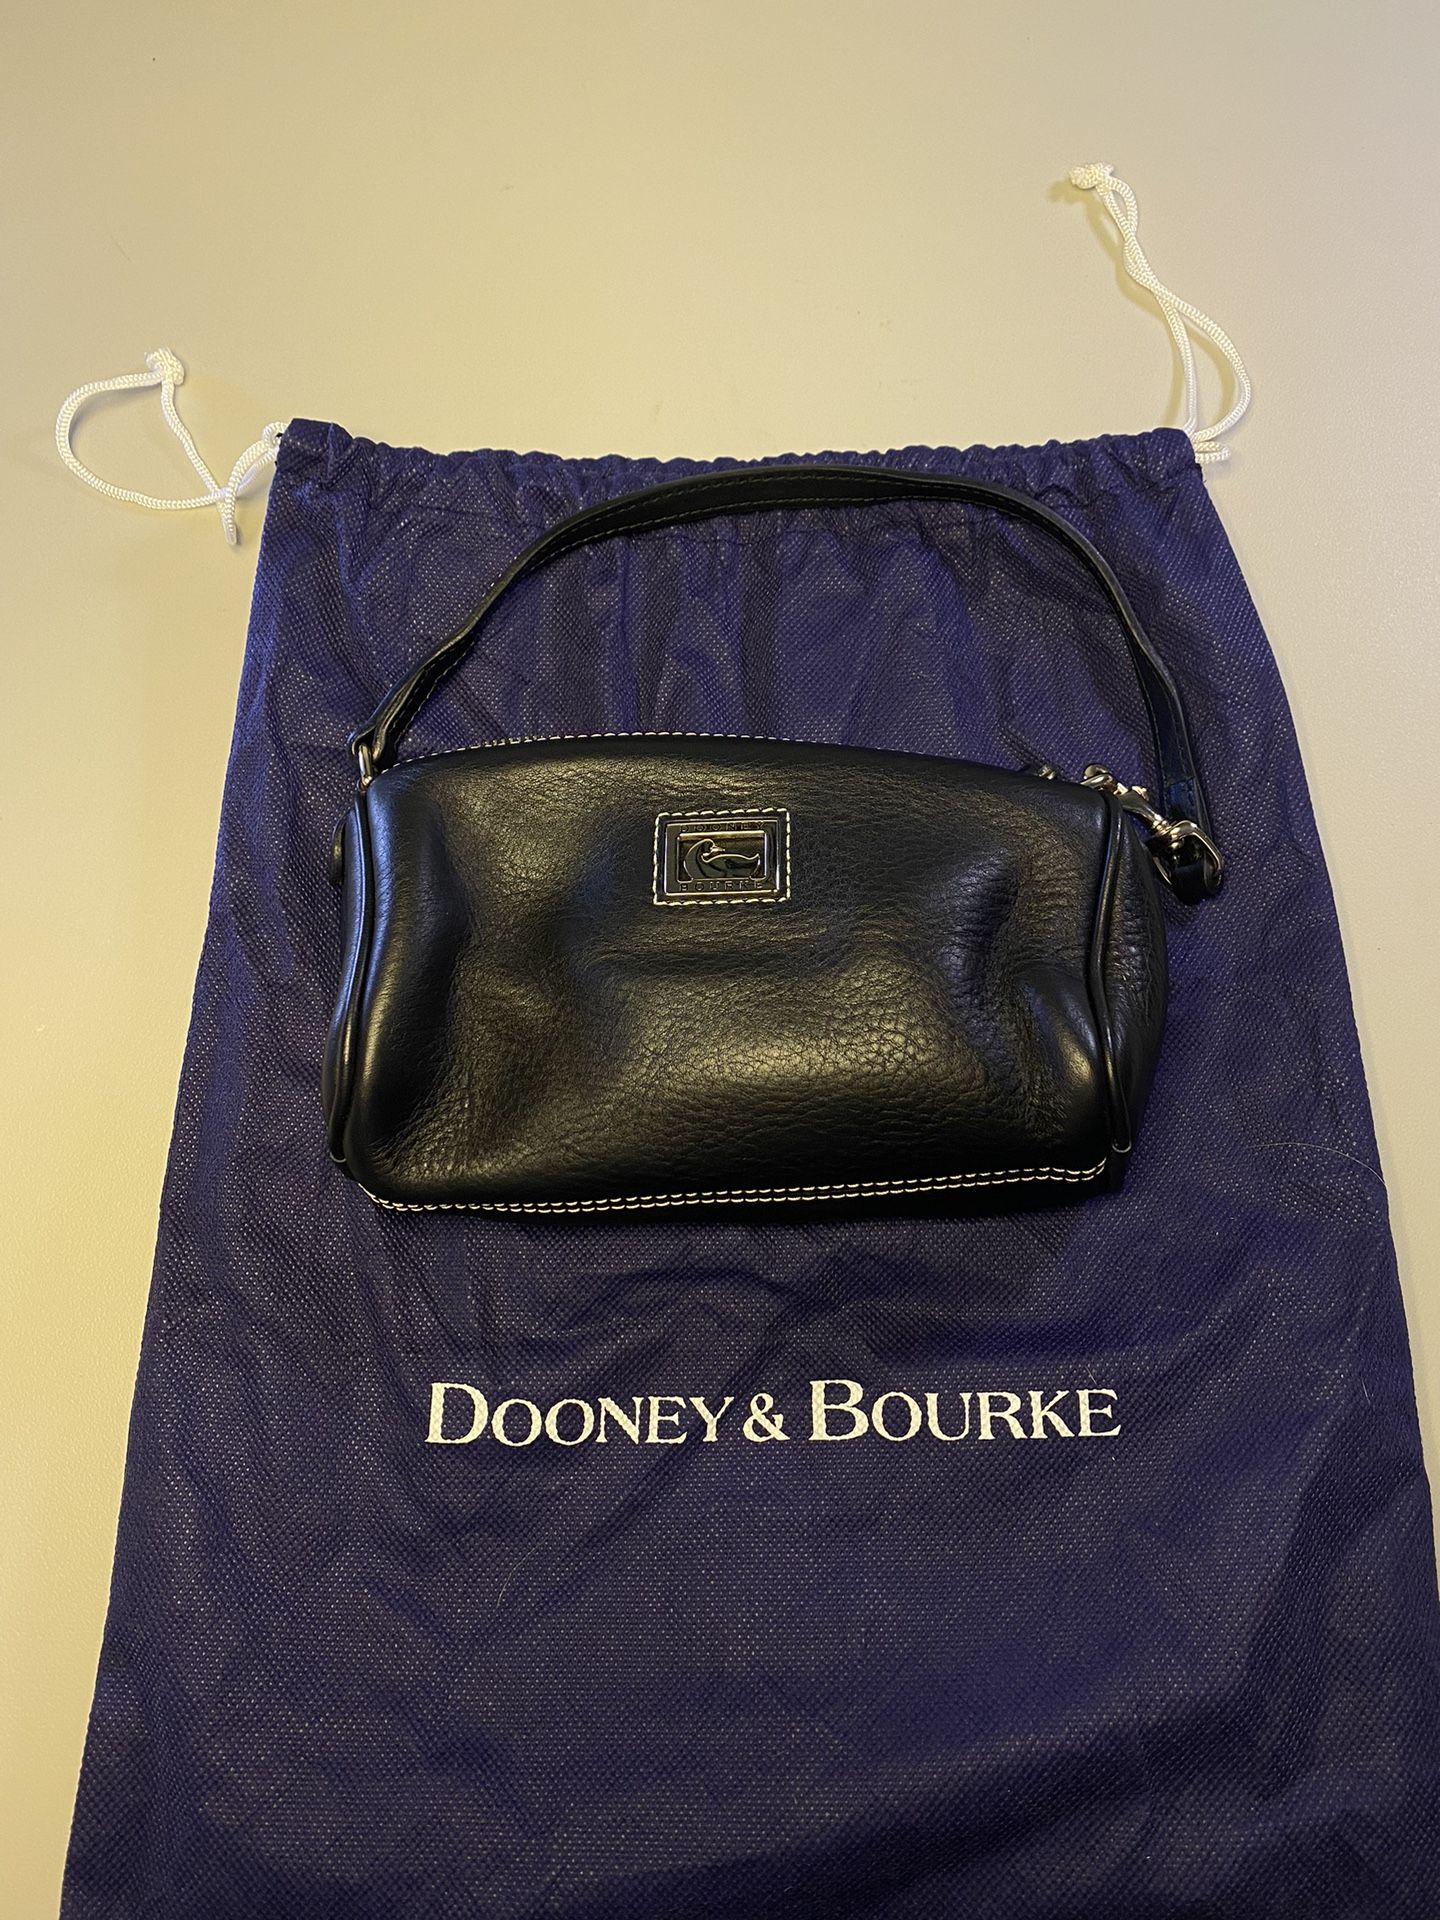 Dooney & Bourke Small Bag